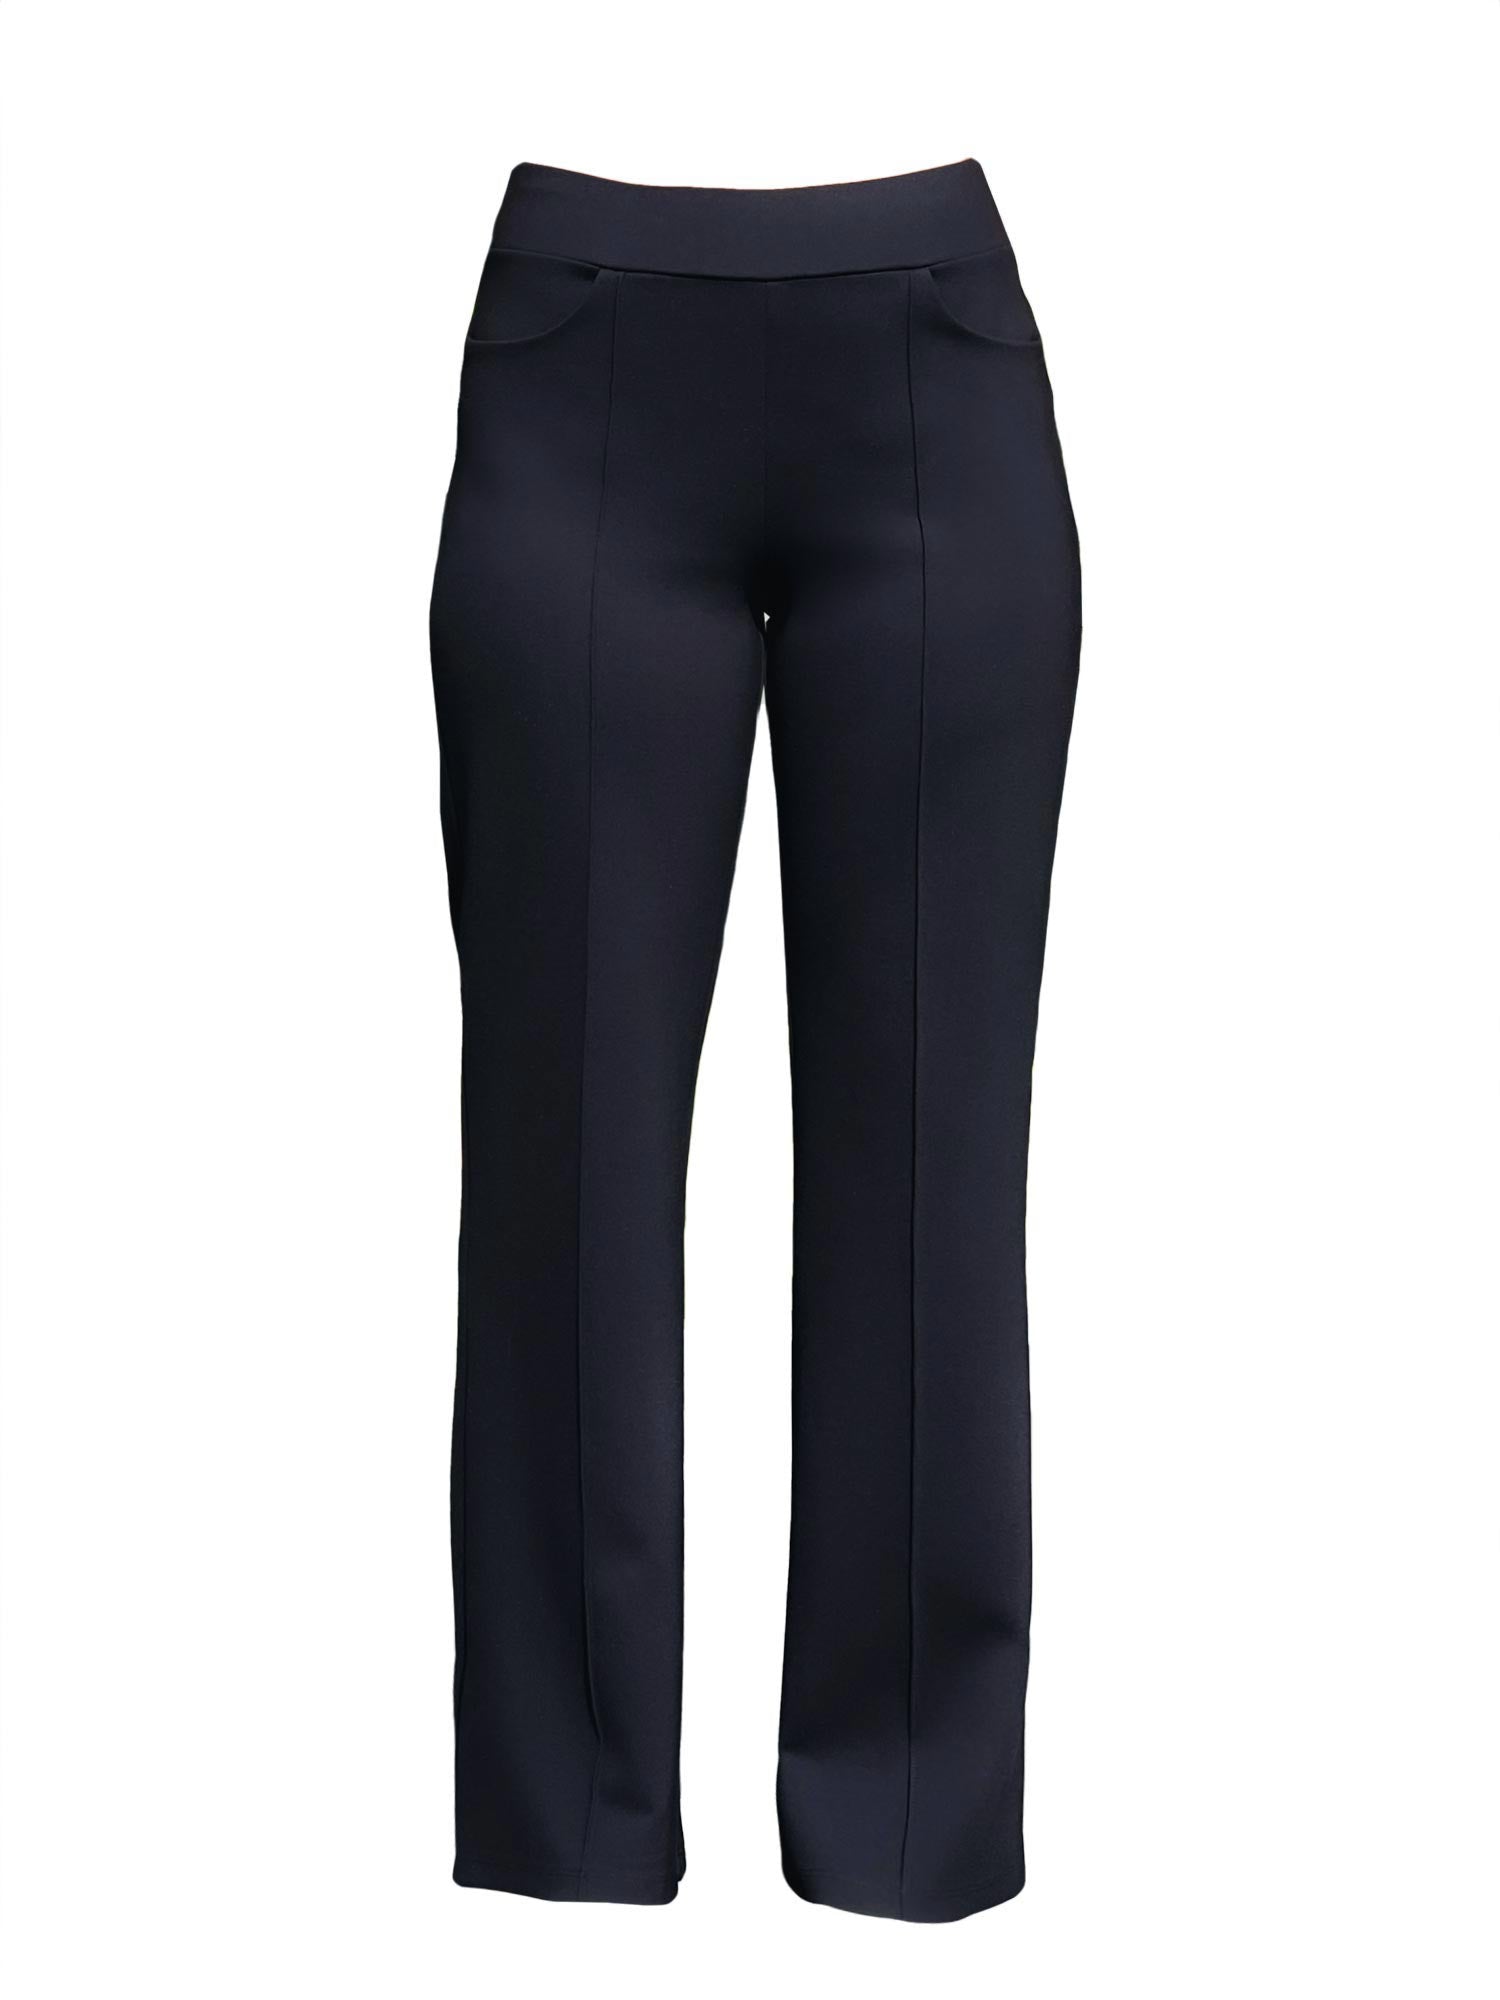 Elegant High-Waist Black Pants for Women